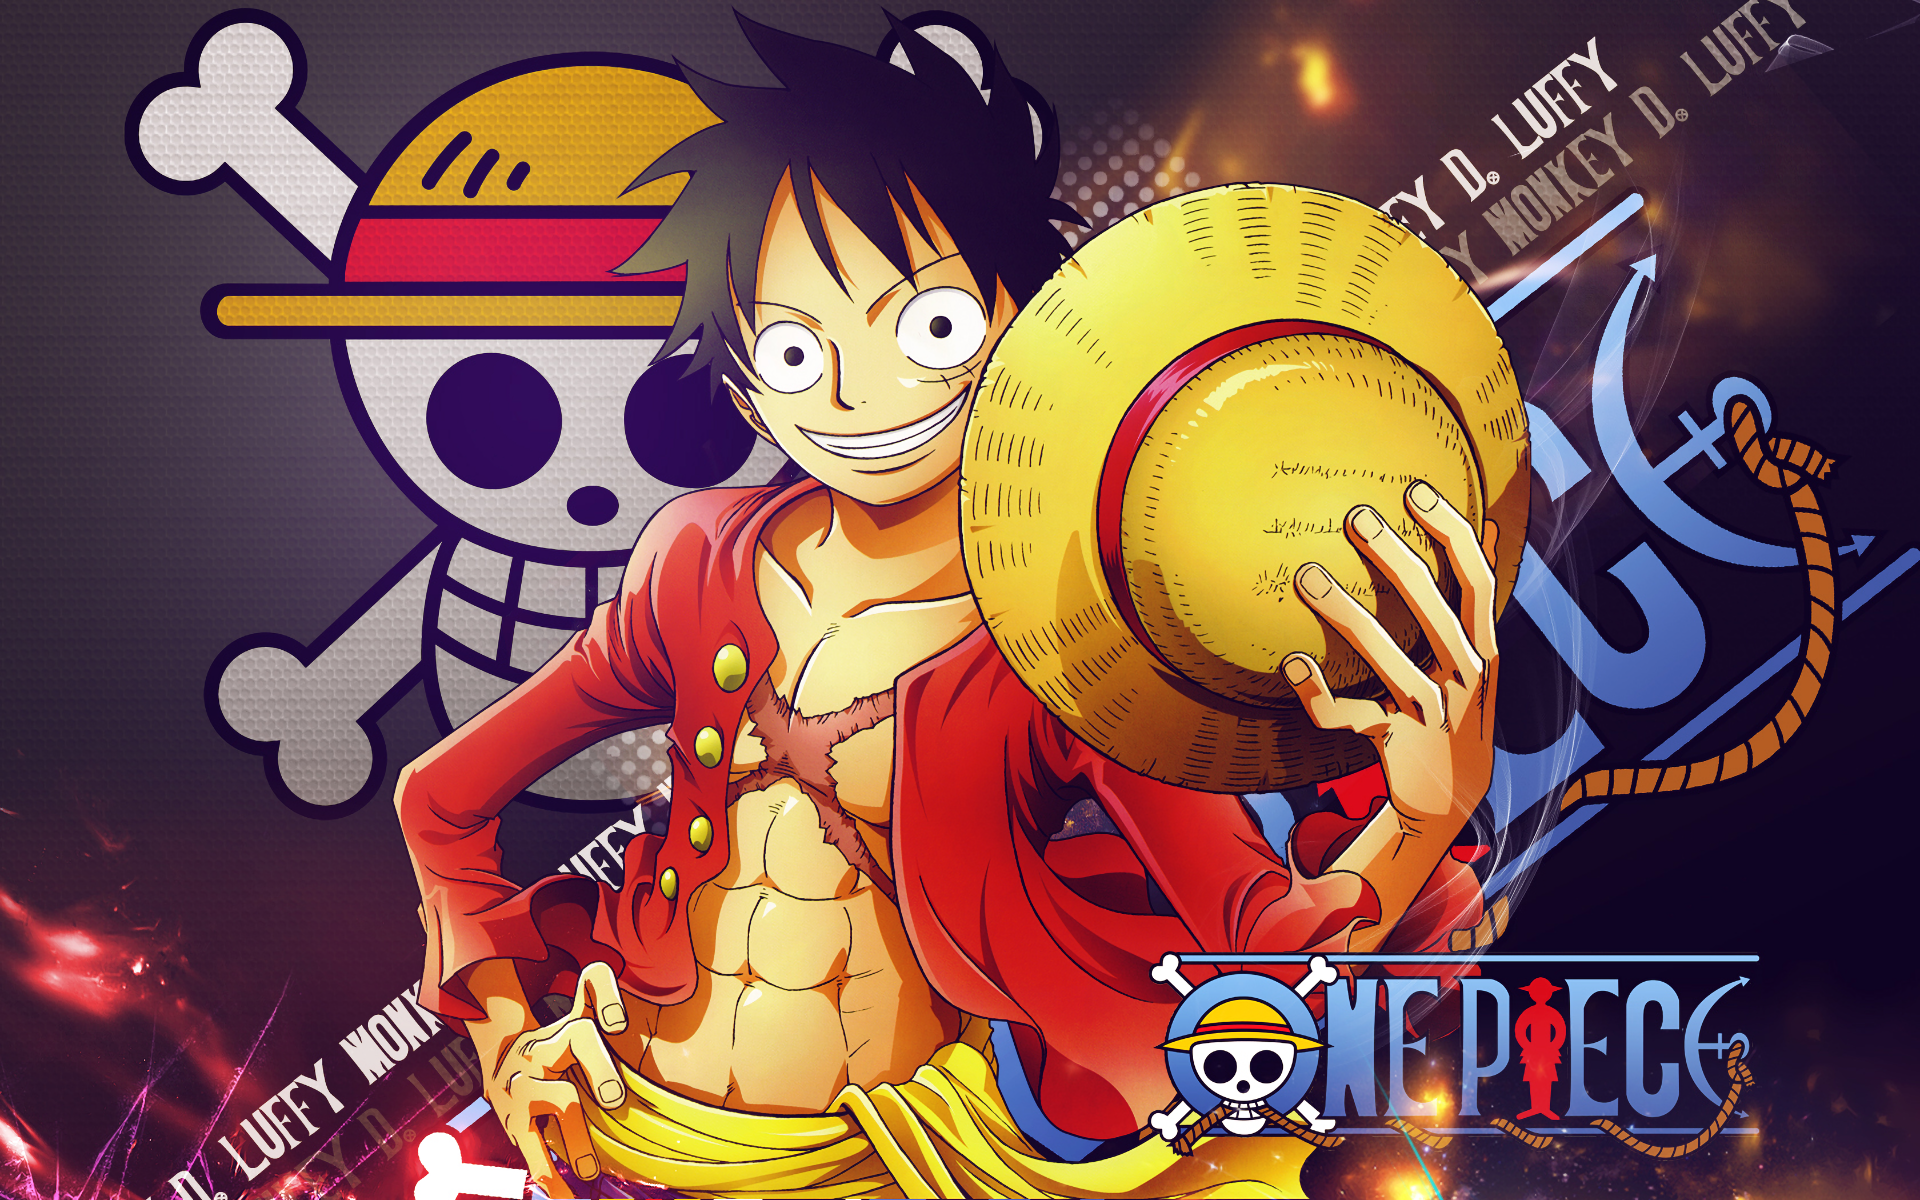 Ngất ngây với hình nền HD của các nhân vật One Piece! Hãy truy cập ngay để được chiêm ngưỡng vẻ đẹp của Tường nhân vật One Piece đầy màu sắc và sống động!